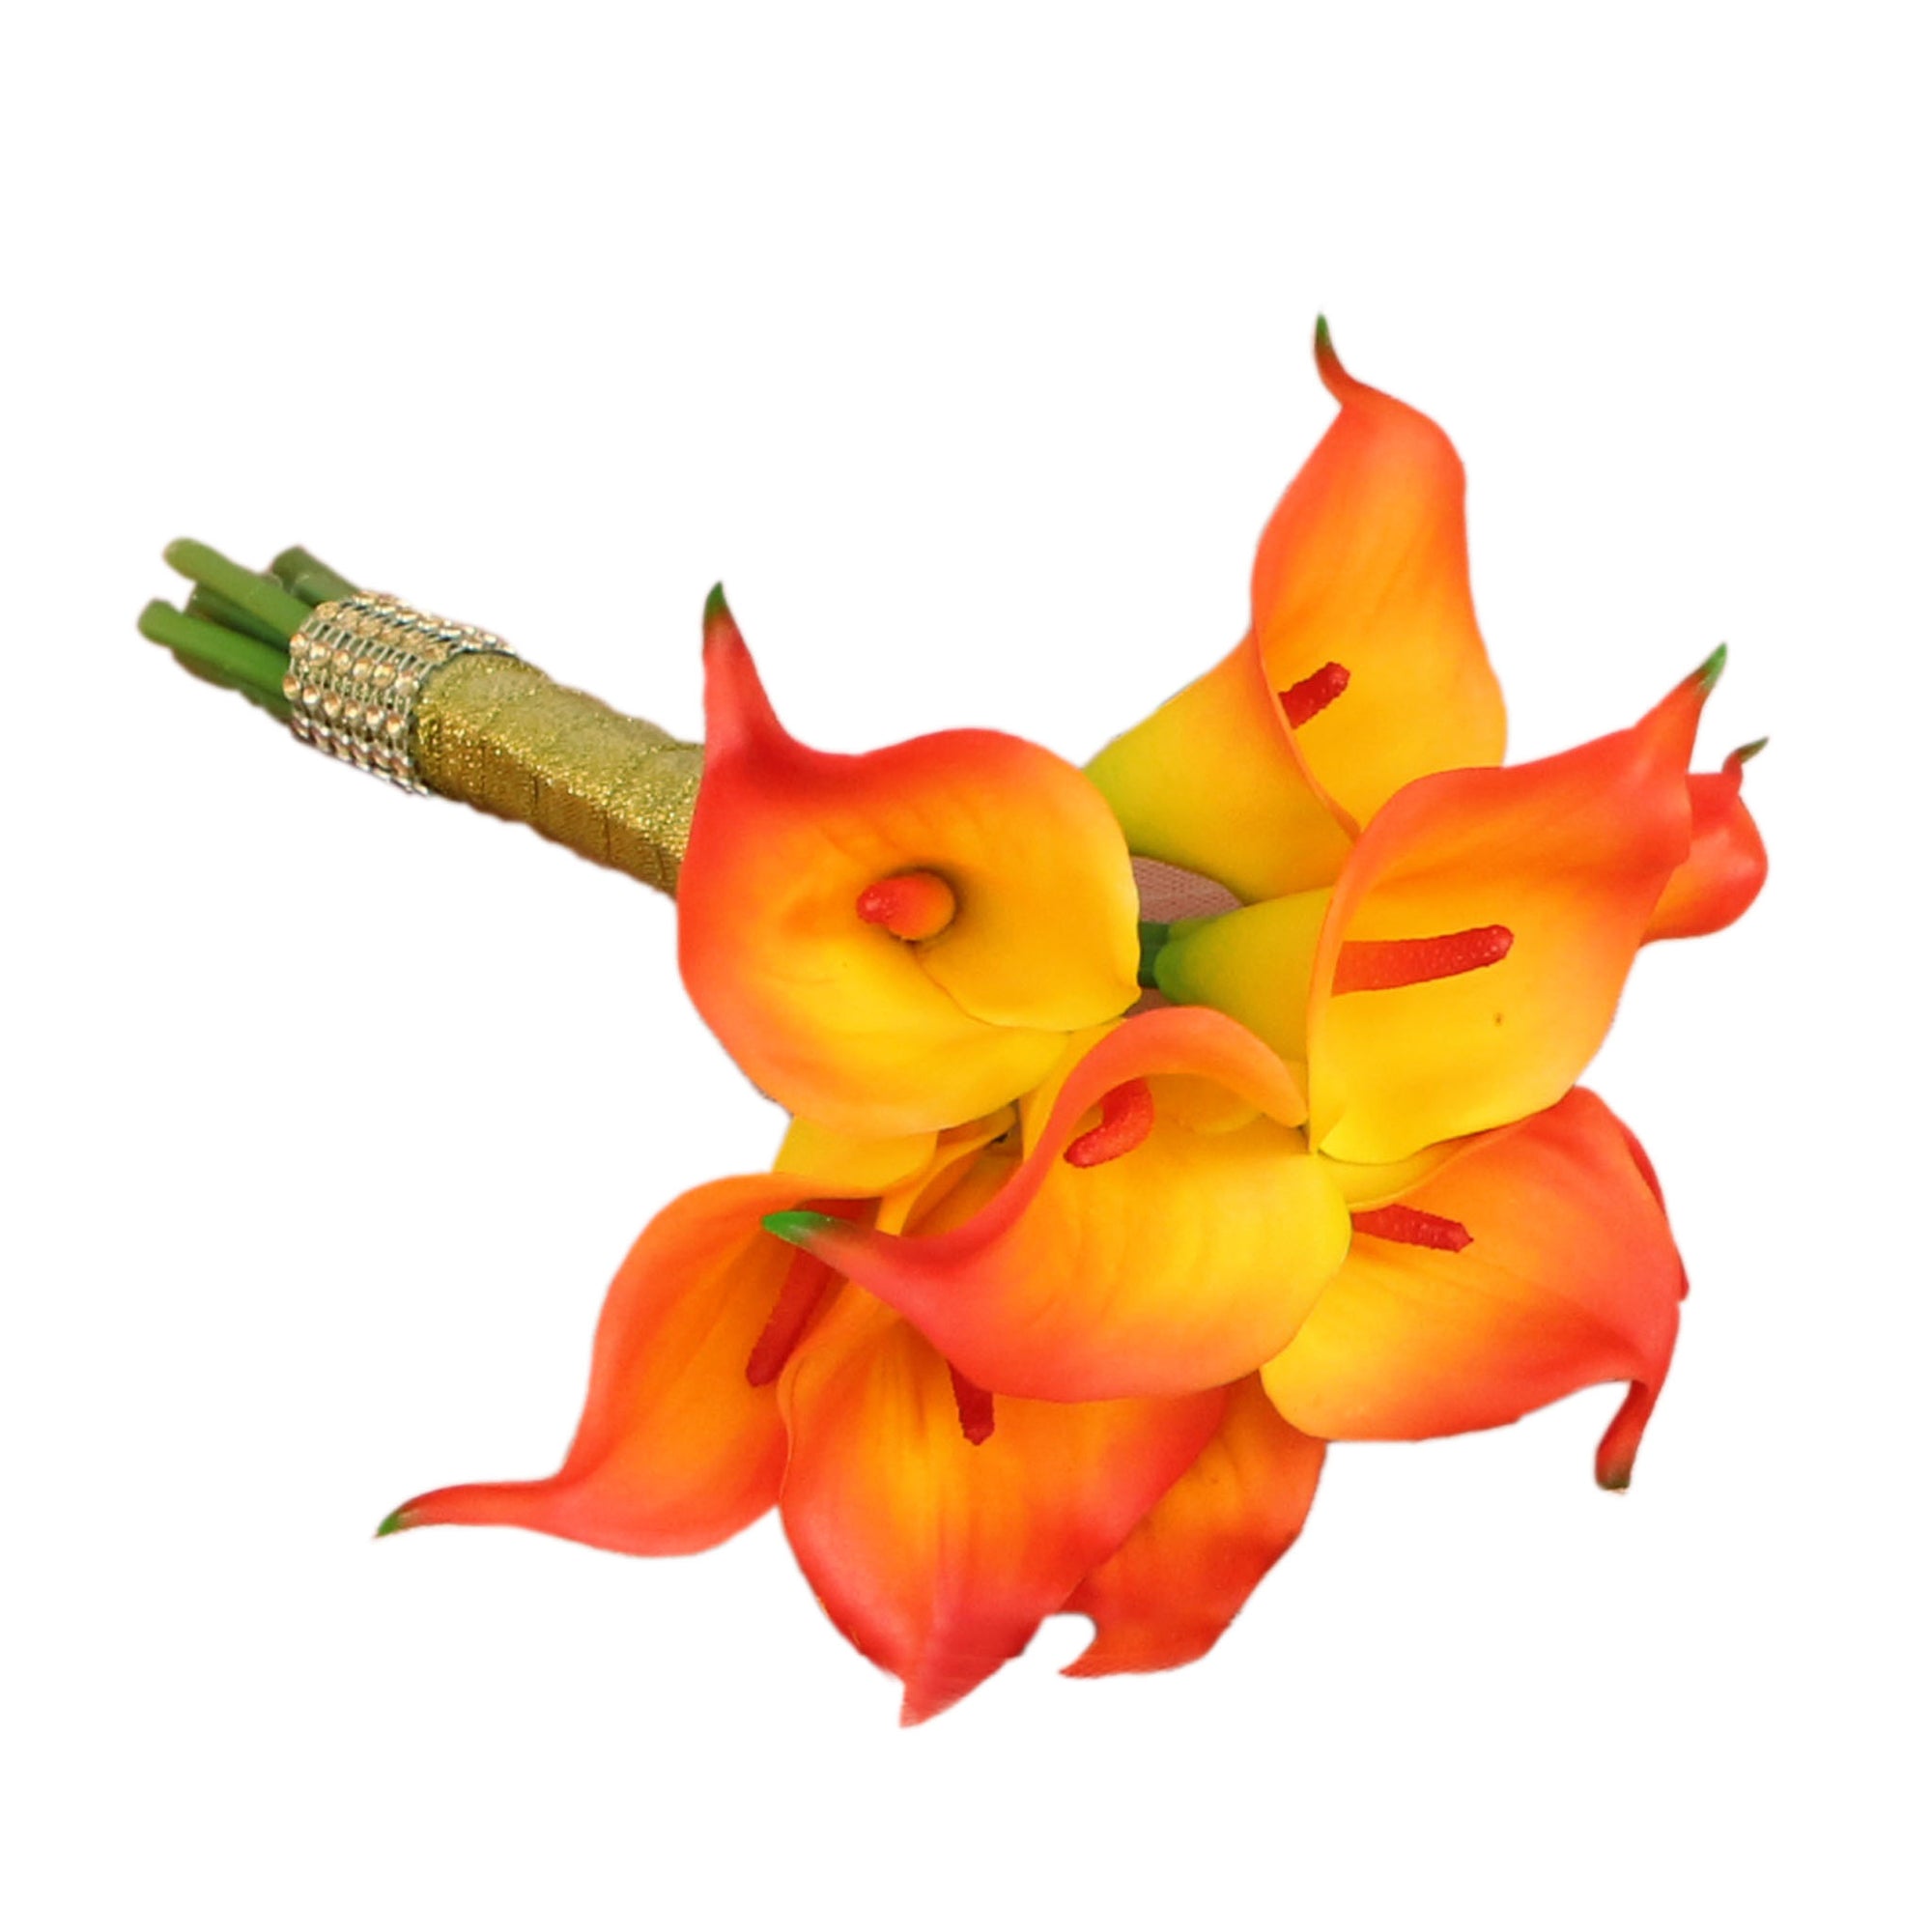 Artificial Orange Calla Lily Wedding Bouquets